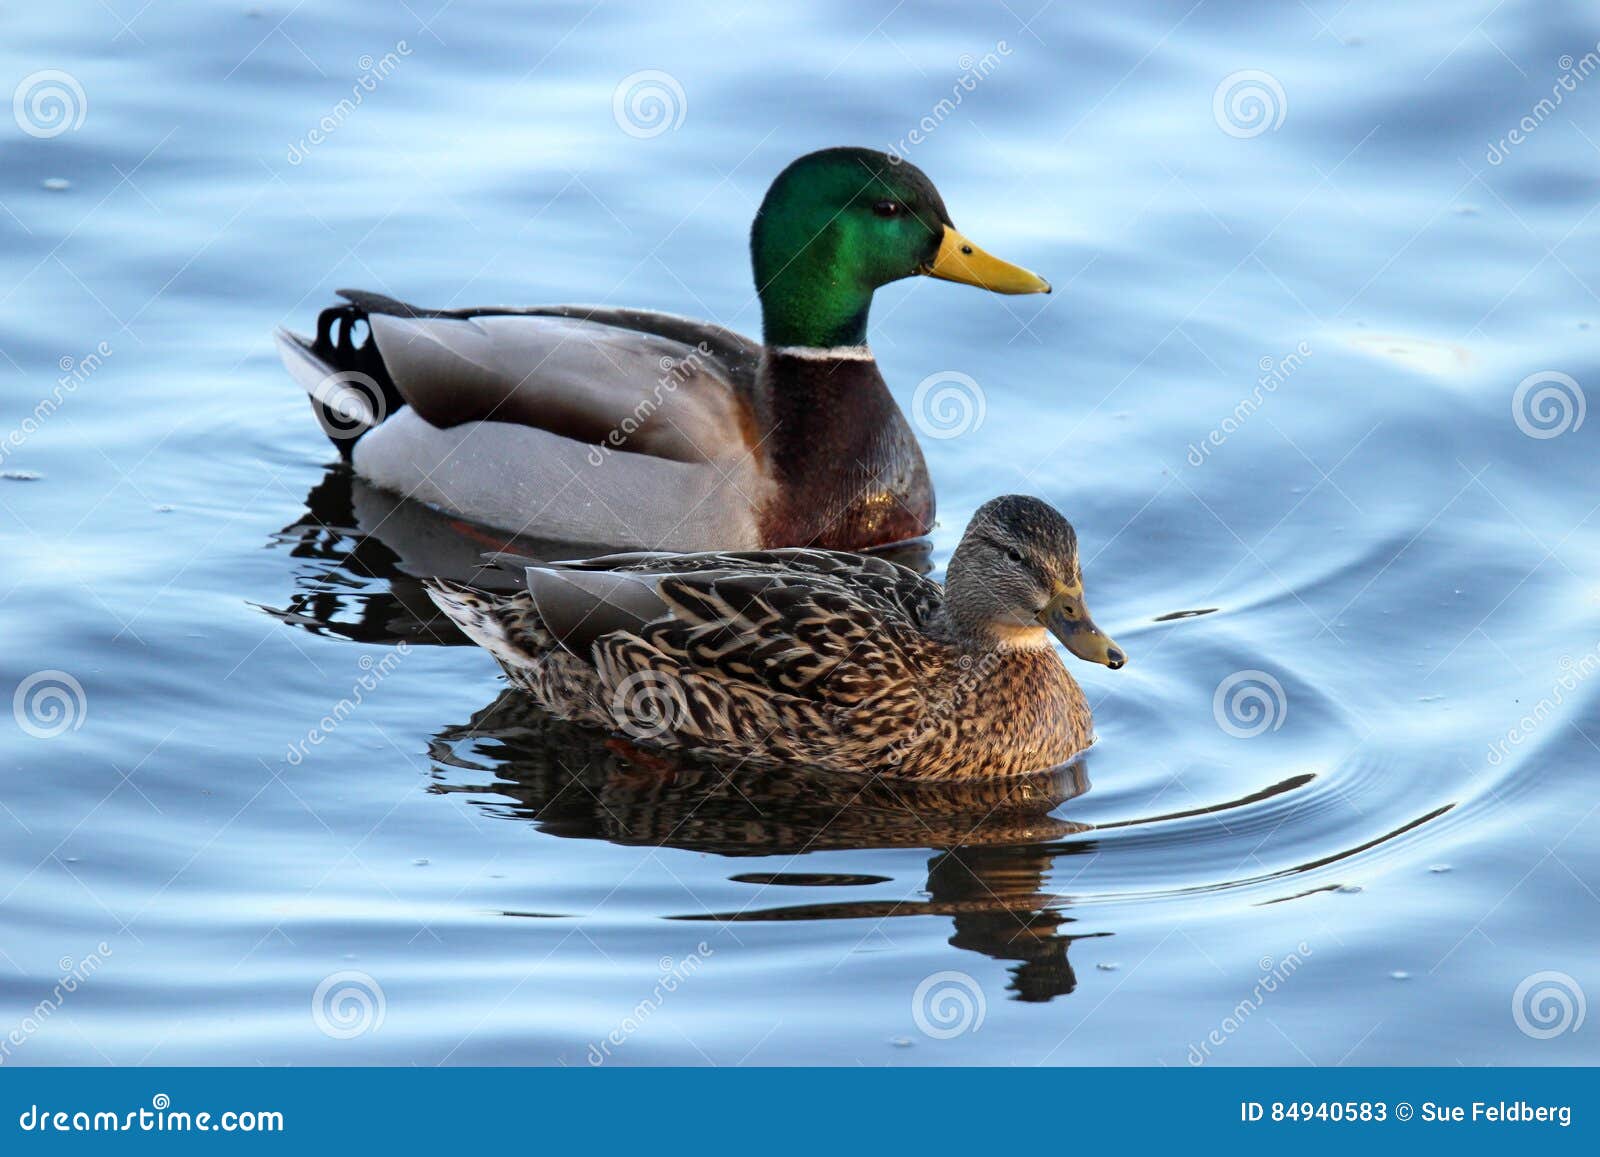 a pair of mallard ducks swimming on a pond